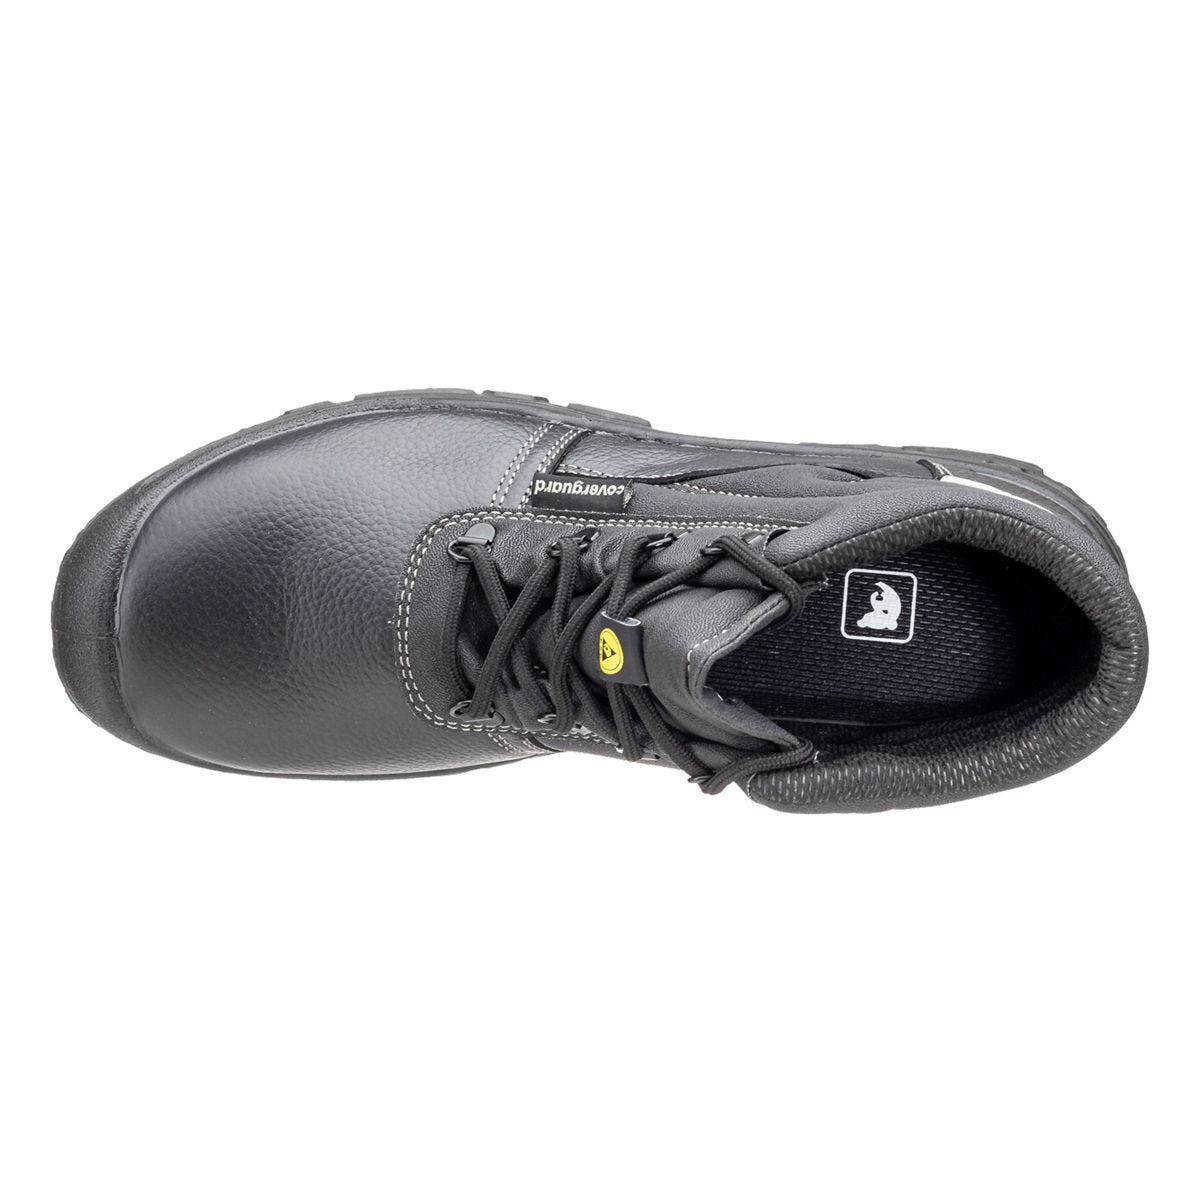 Chaussures de sécurité hautes Azurite II S3 ESD noir - Coverguard - Taille 47 3